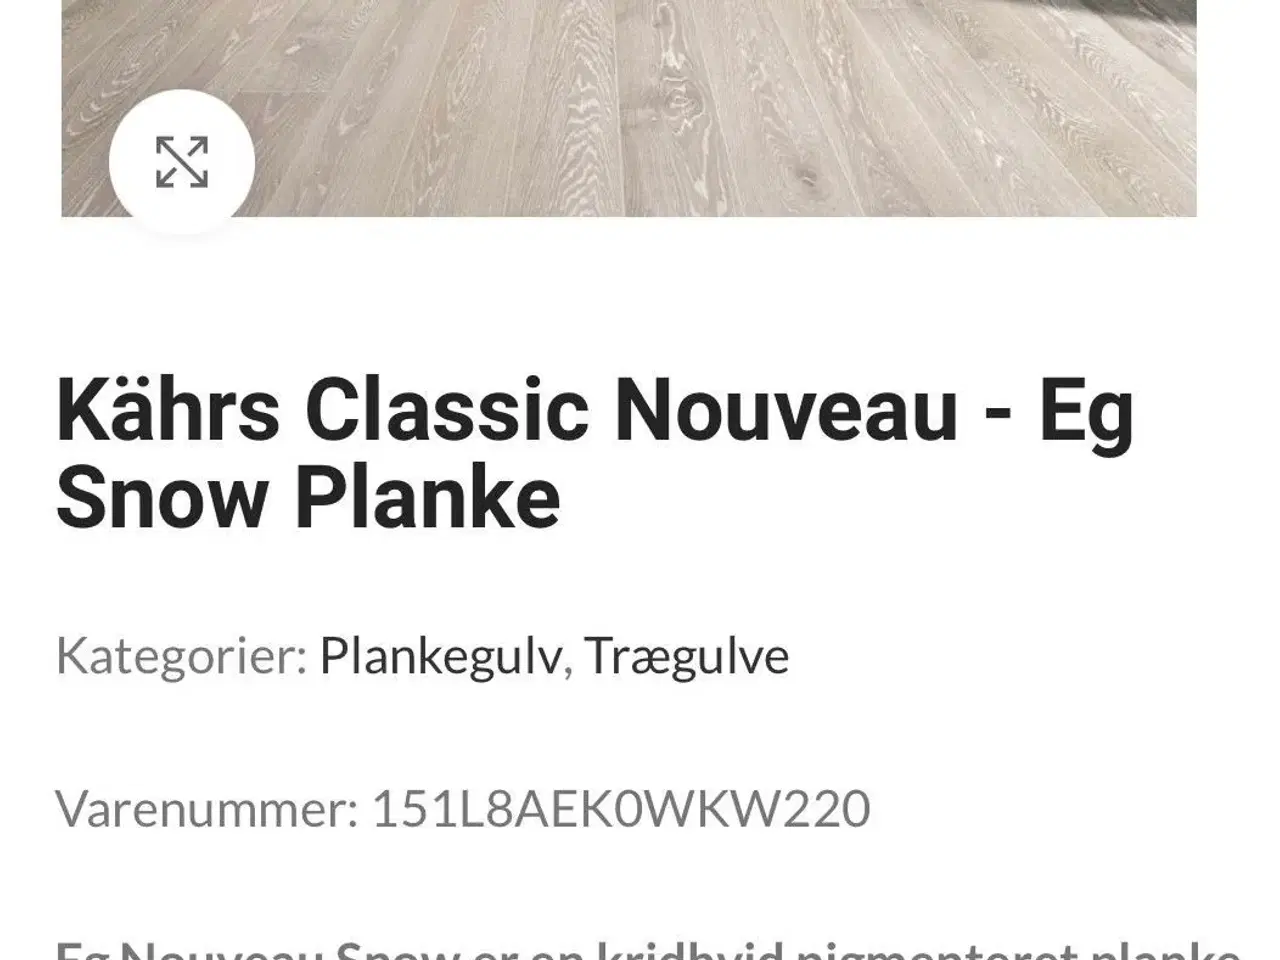 Billede 1 - 2,54 m2 Hvidpigmenteret Eg Plankegulv